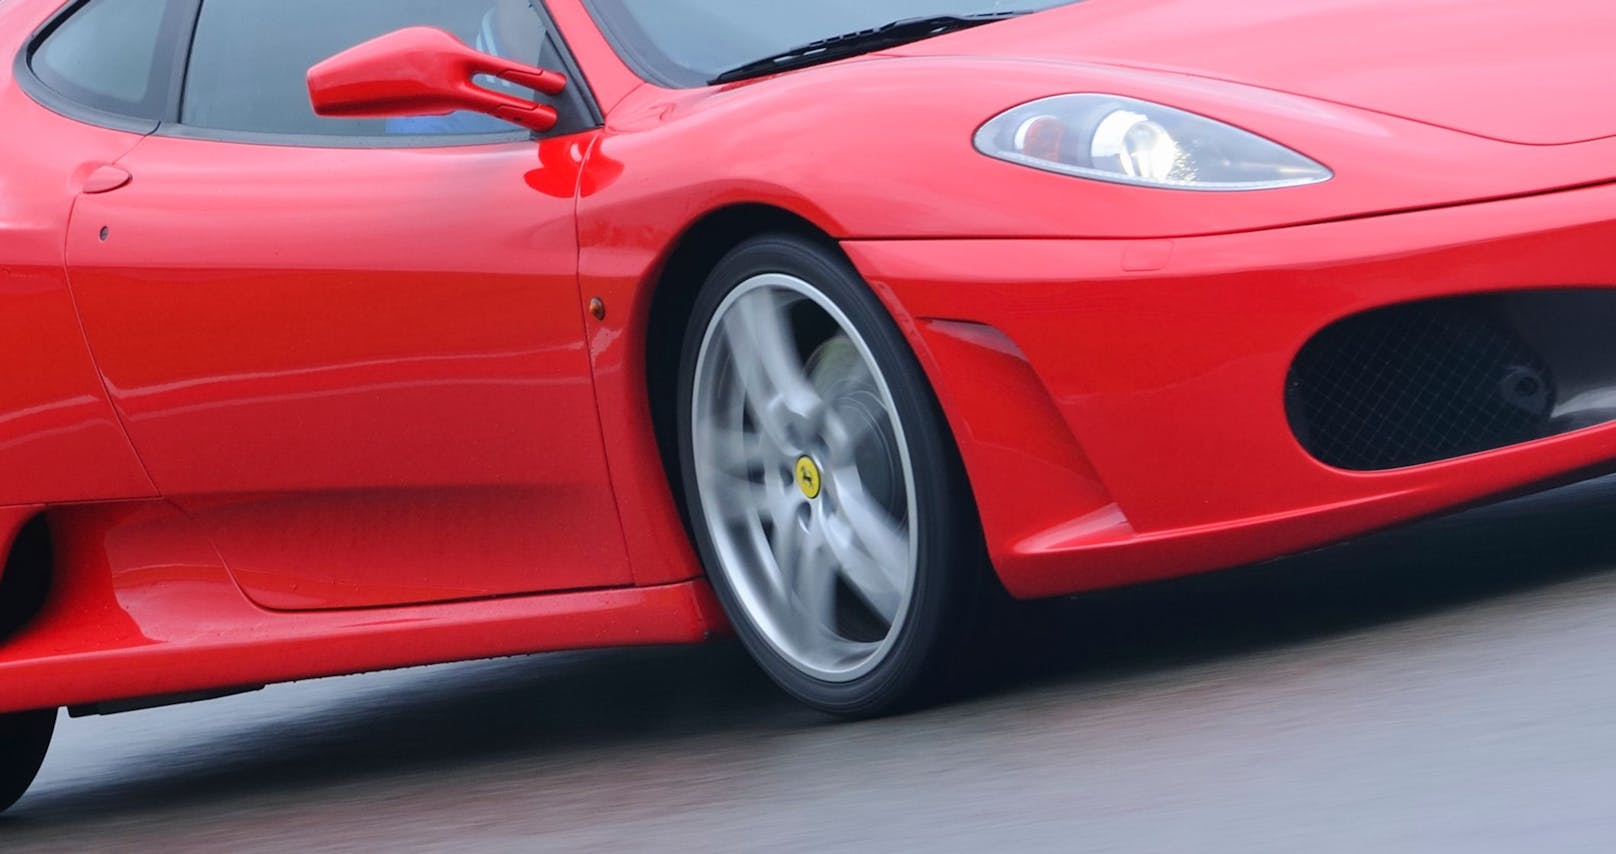 Die Frau hatte sich den Ferrari für eine Probefahrt geliehen. Symbolfoto.